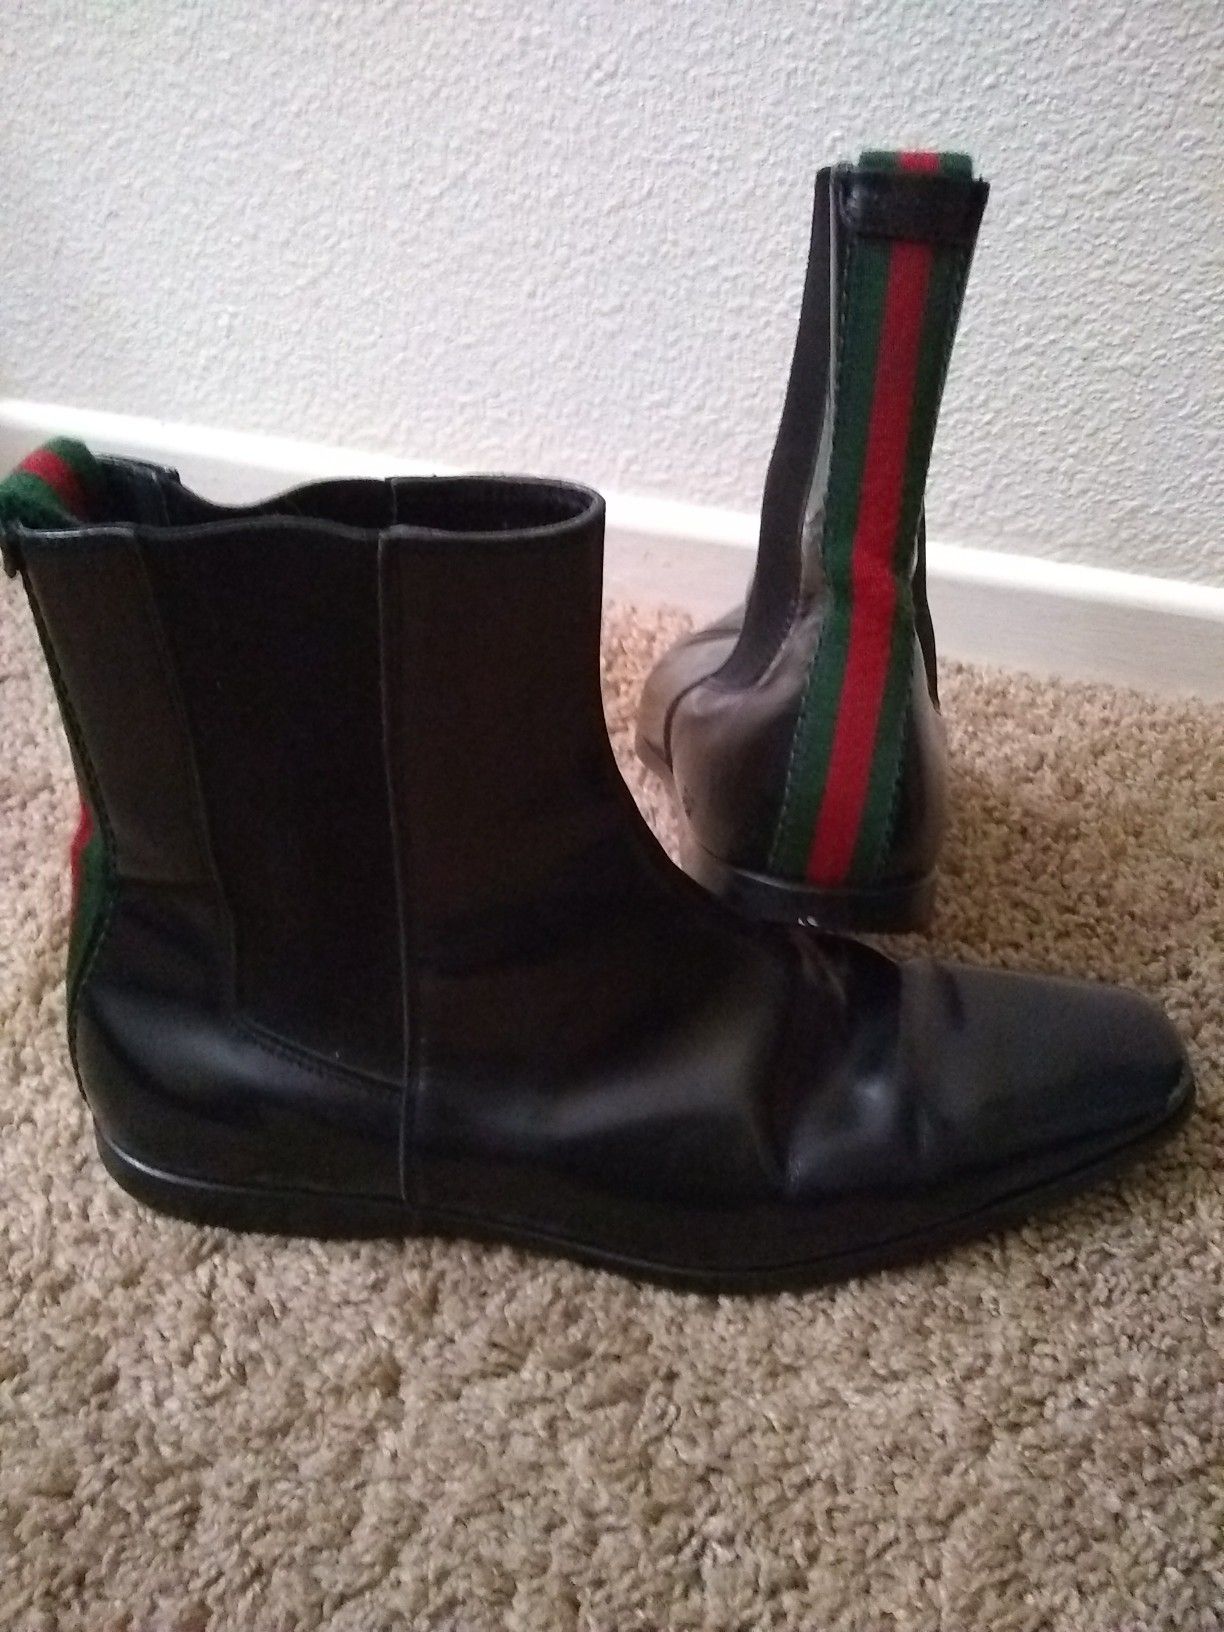 Gucci Men's boots size 8 1/2